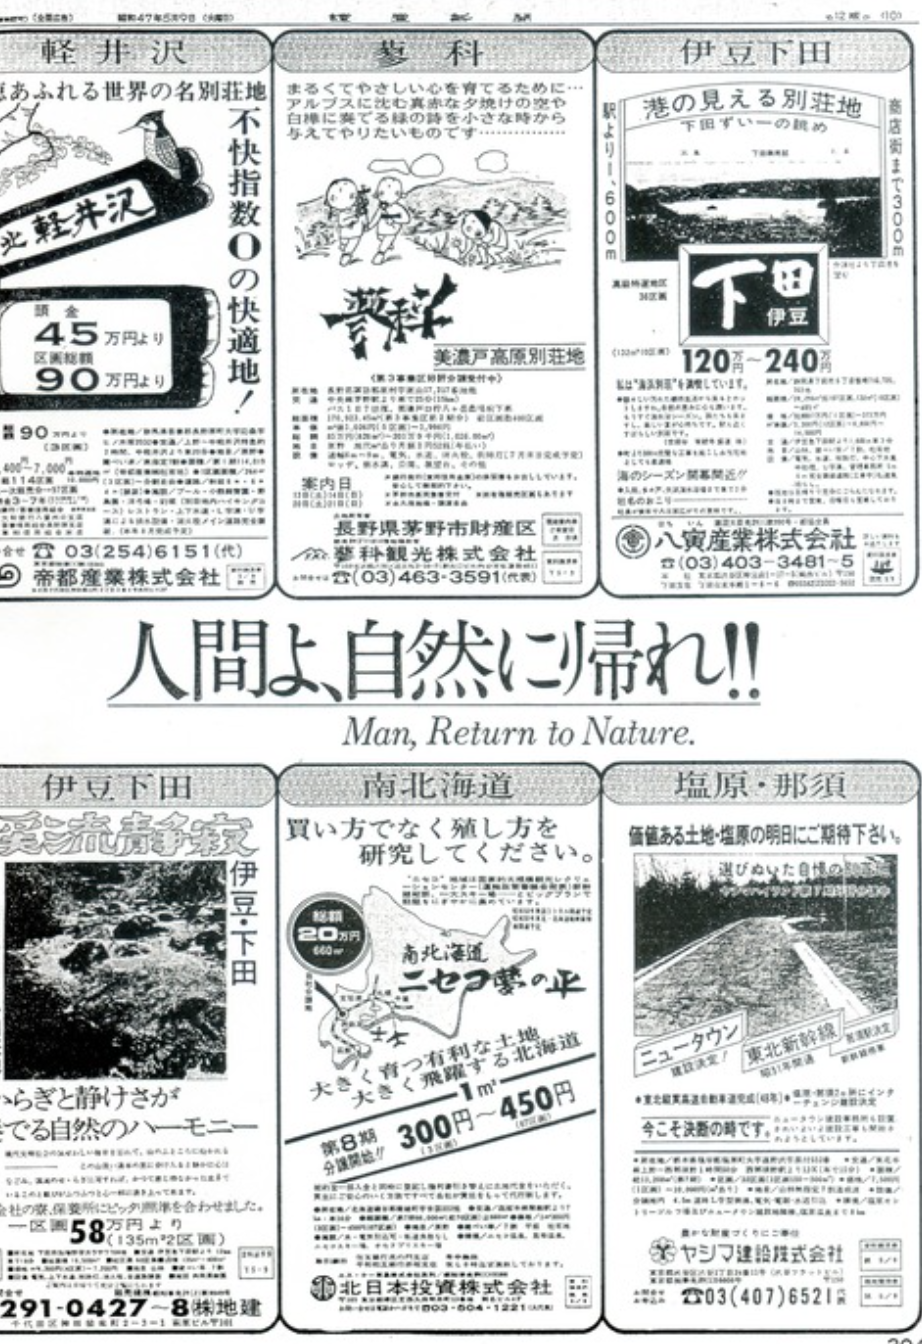 1972年房地产商在报纸上刊登的地产广告，呼吁人类回归自然。图源：推特@yuwave2009